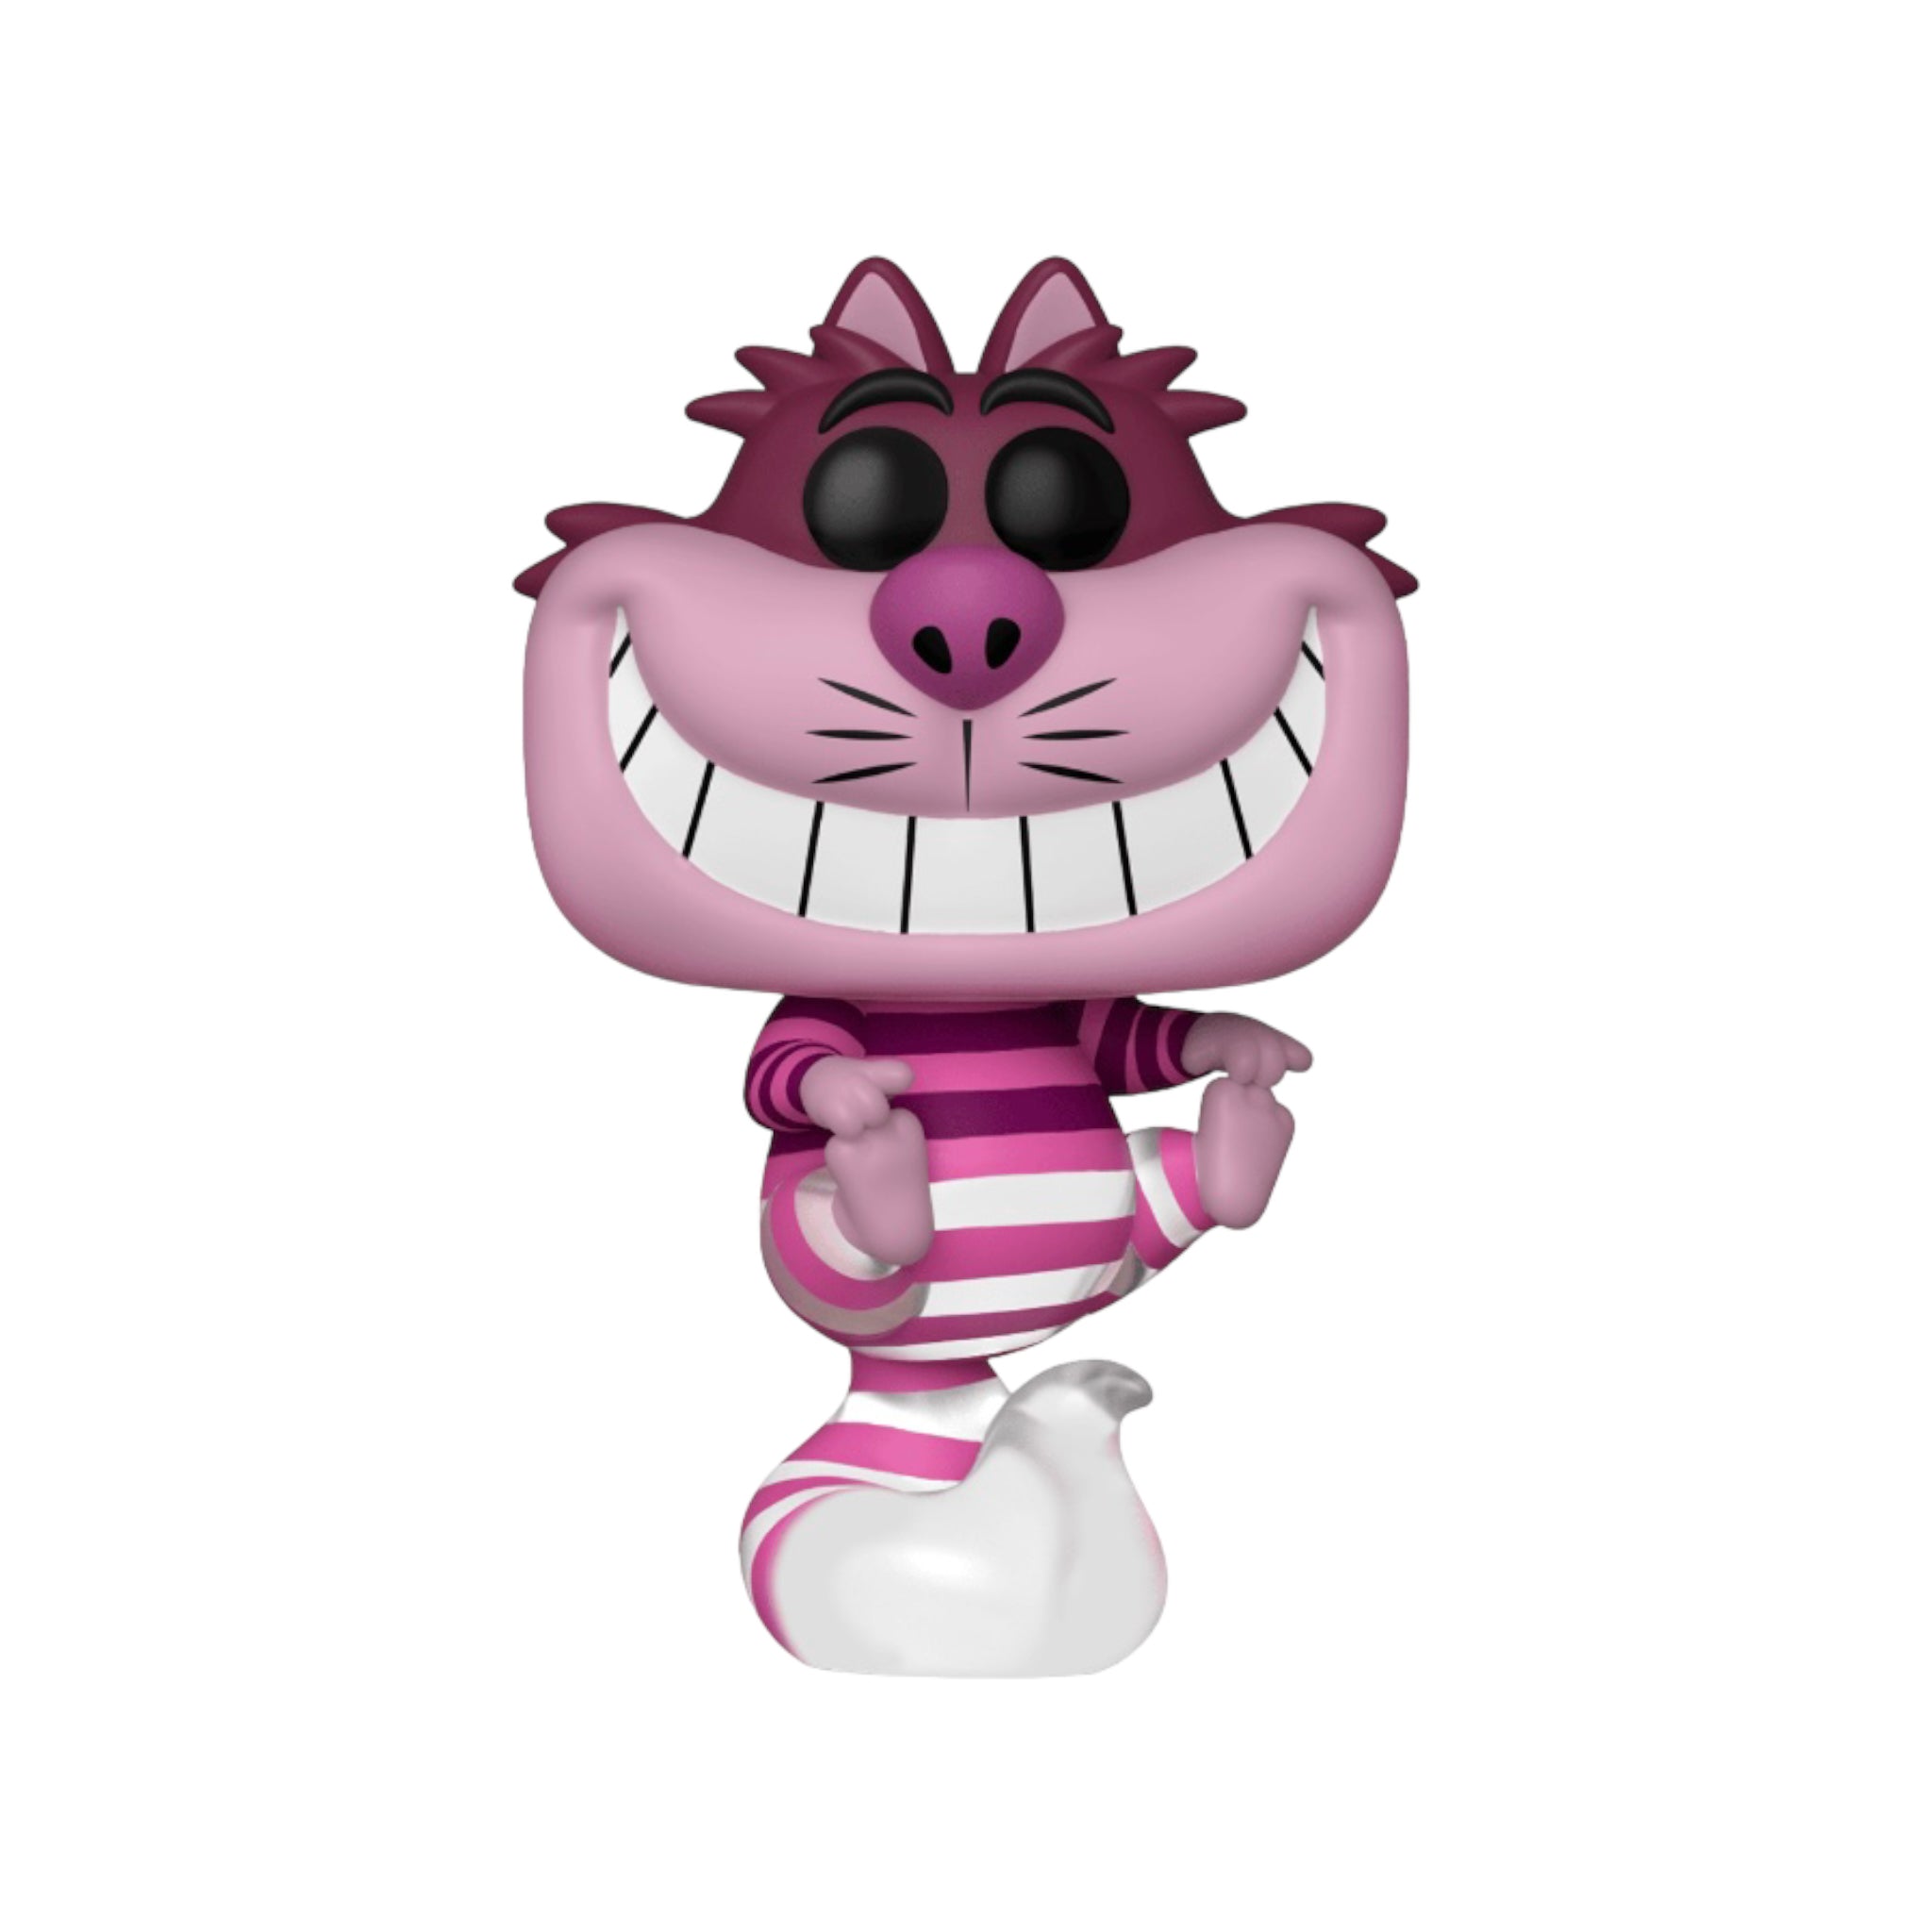 Cheshire Cat #1049 (Translucent) Funko Pop! - Alice in Wonderland